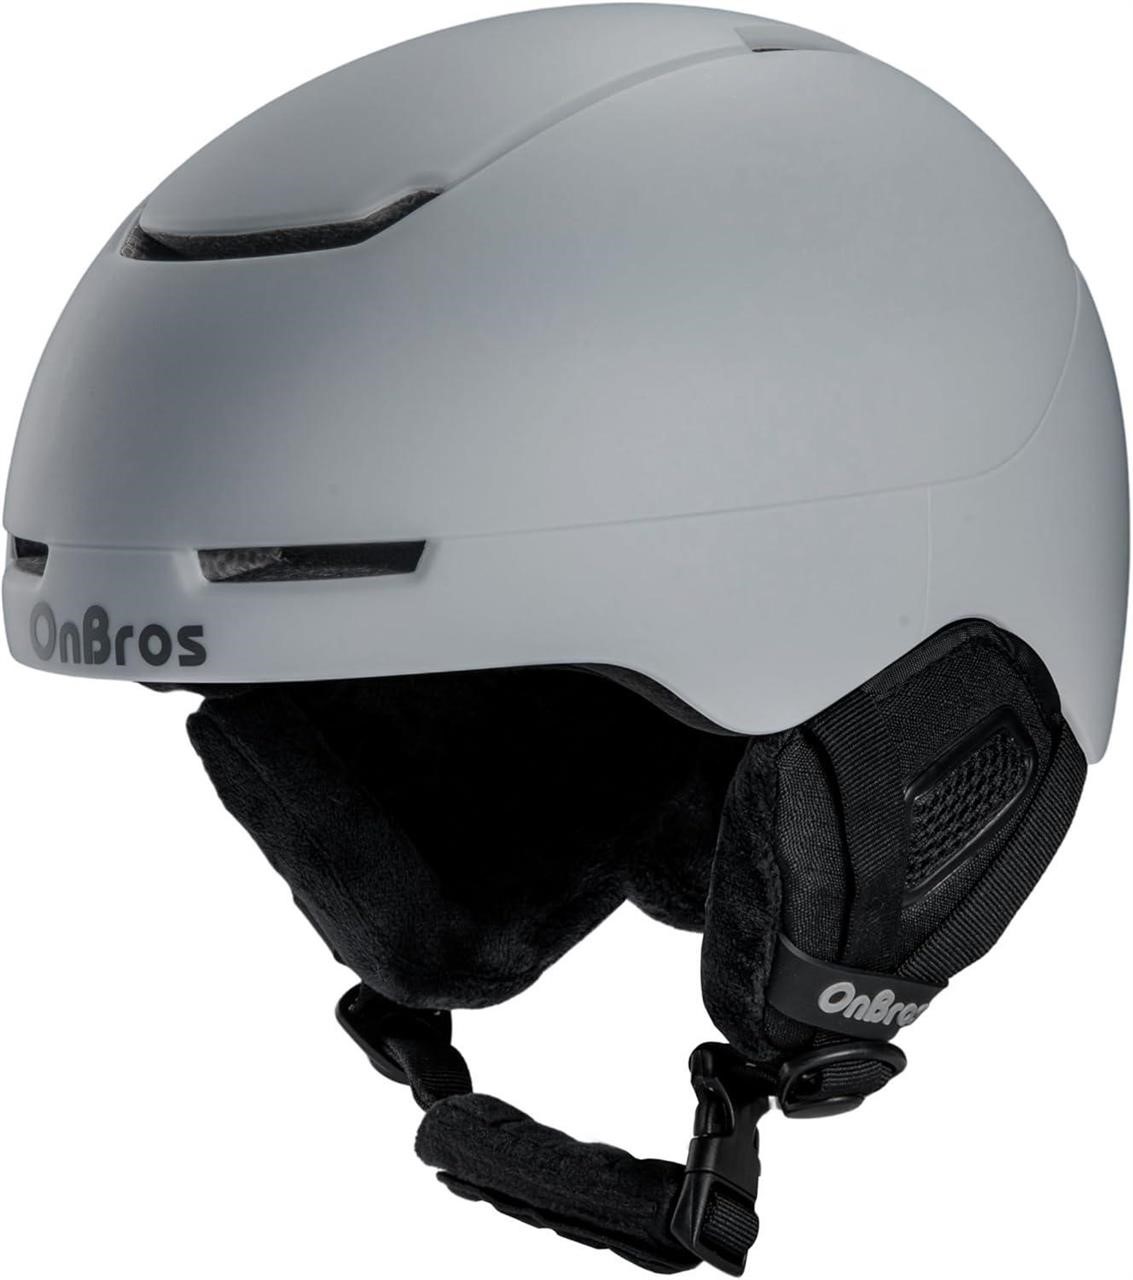 OnBros Snowboard Helmet for Men Women